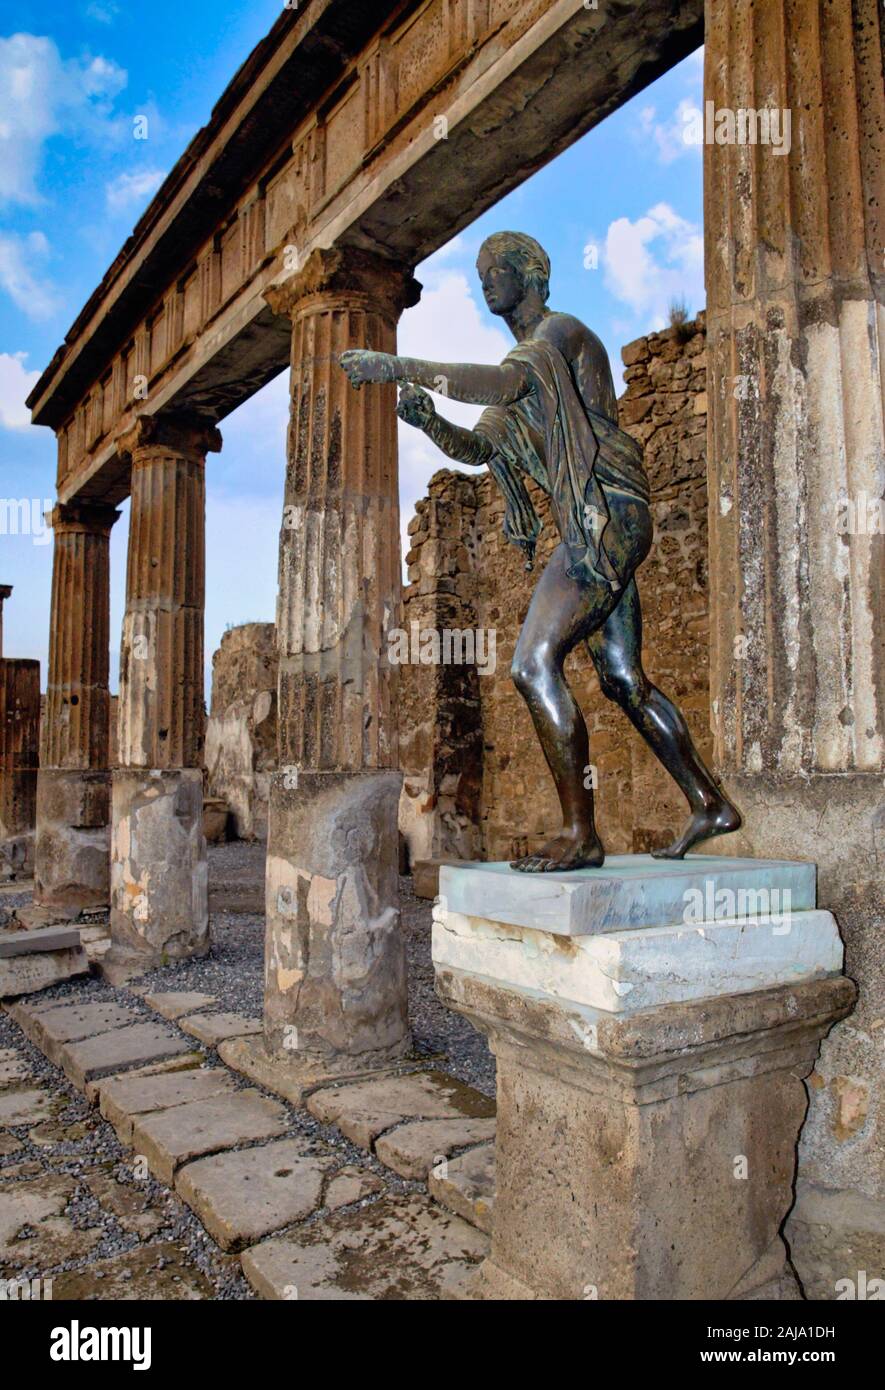 Temple of Apollo in Pompeii, Campania, Italy, Europe Stock Photo